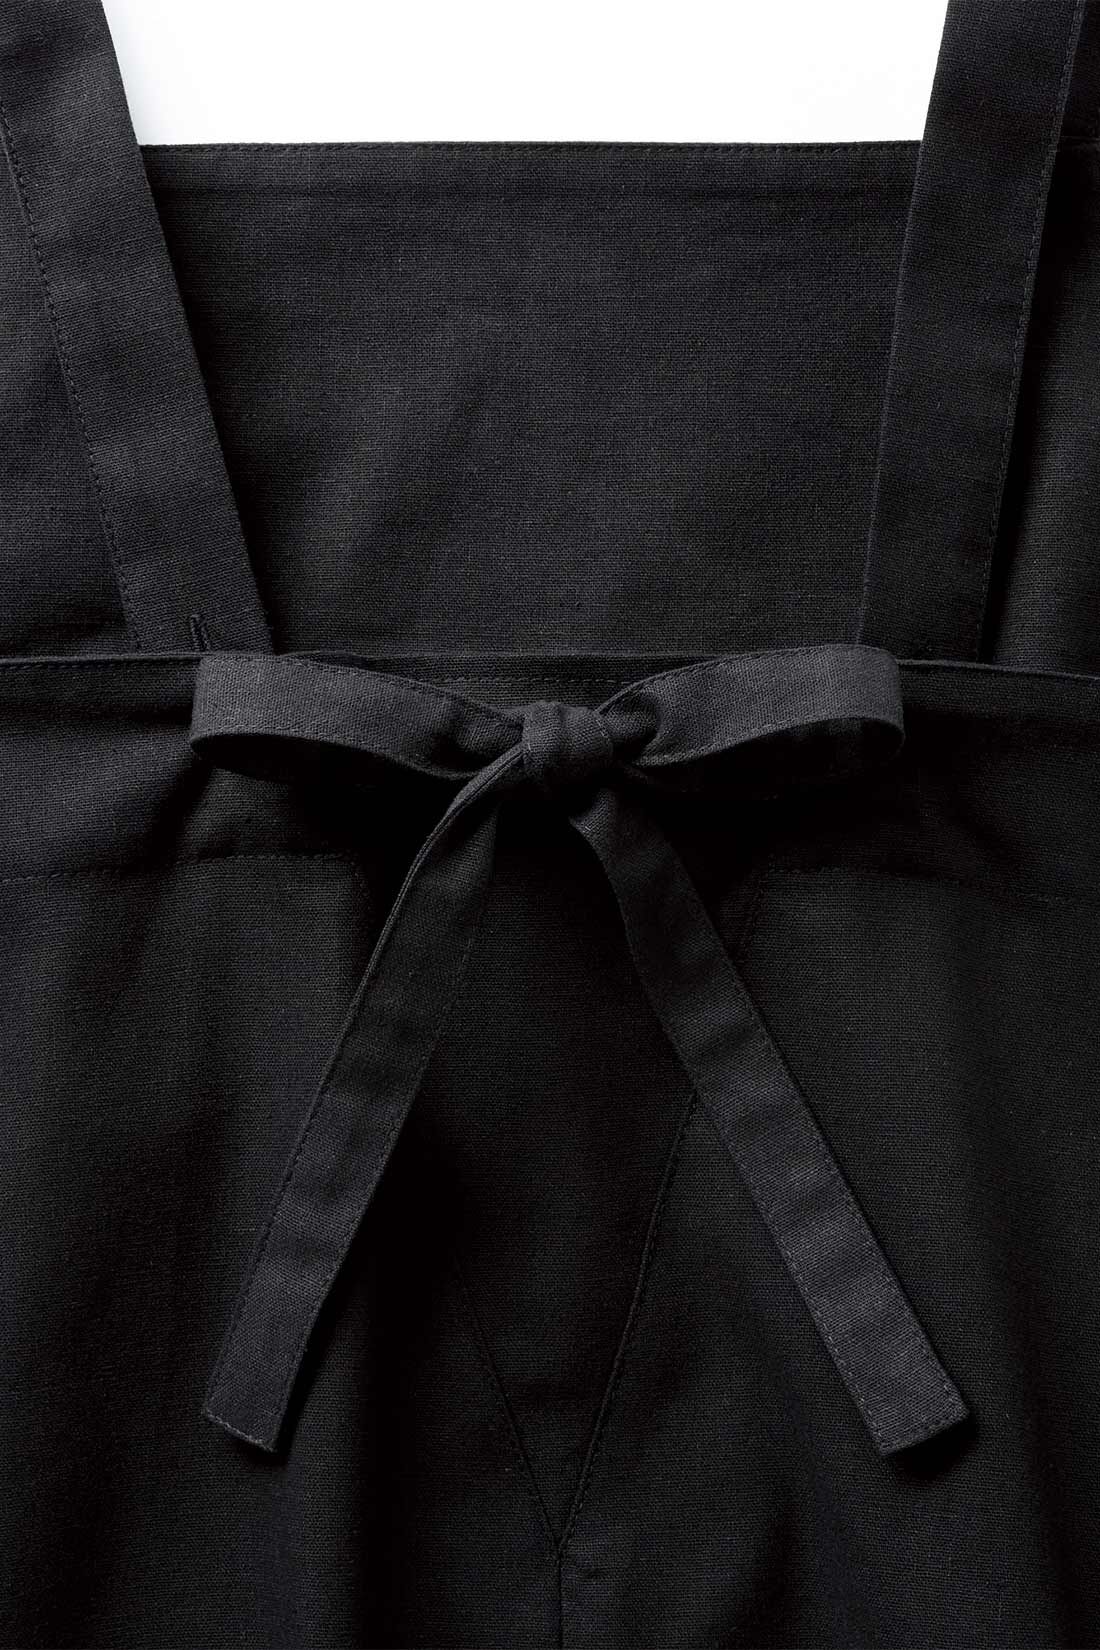 シロップ．|スタイリスト明石恵美子さん×シロップ． コーディネートの幅が広がるリネン混のジャンパースカート〈ブラック〉|リボンは取り外し可。ストラップをクロスさせればデザインのアレンジも。